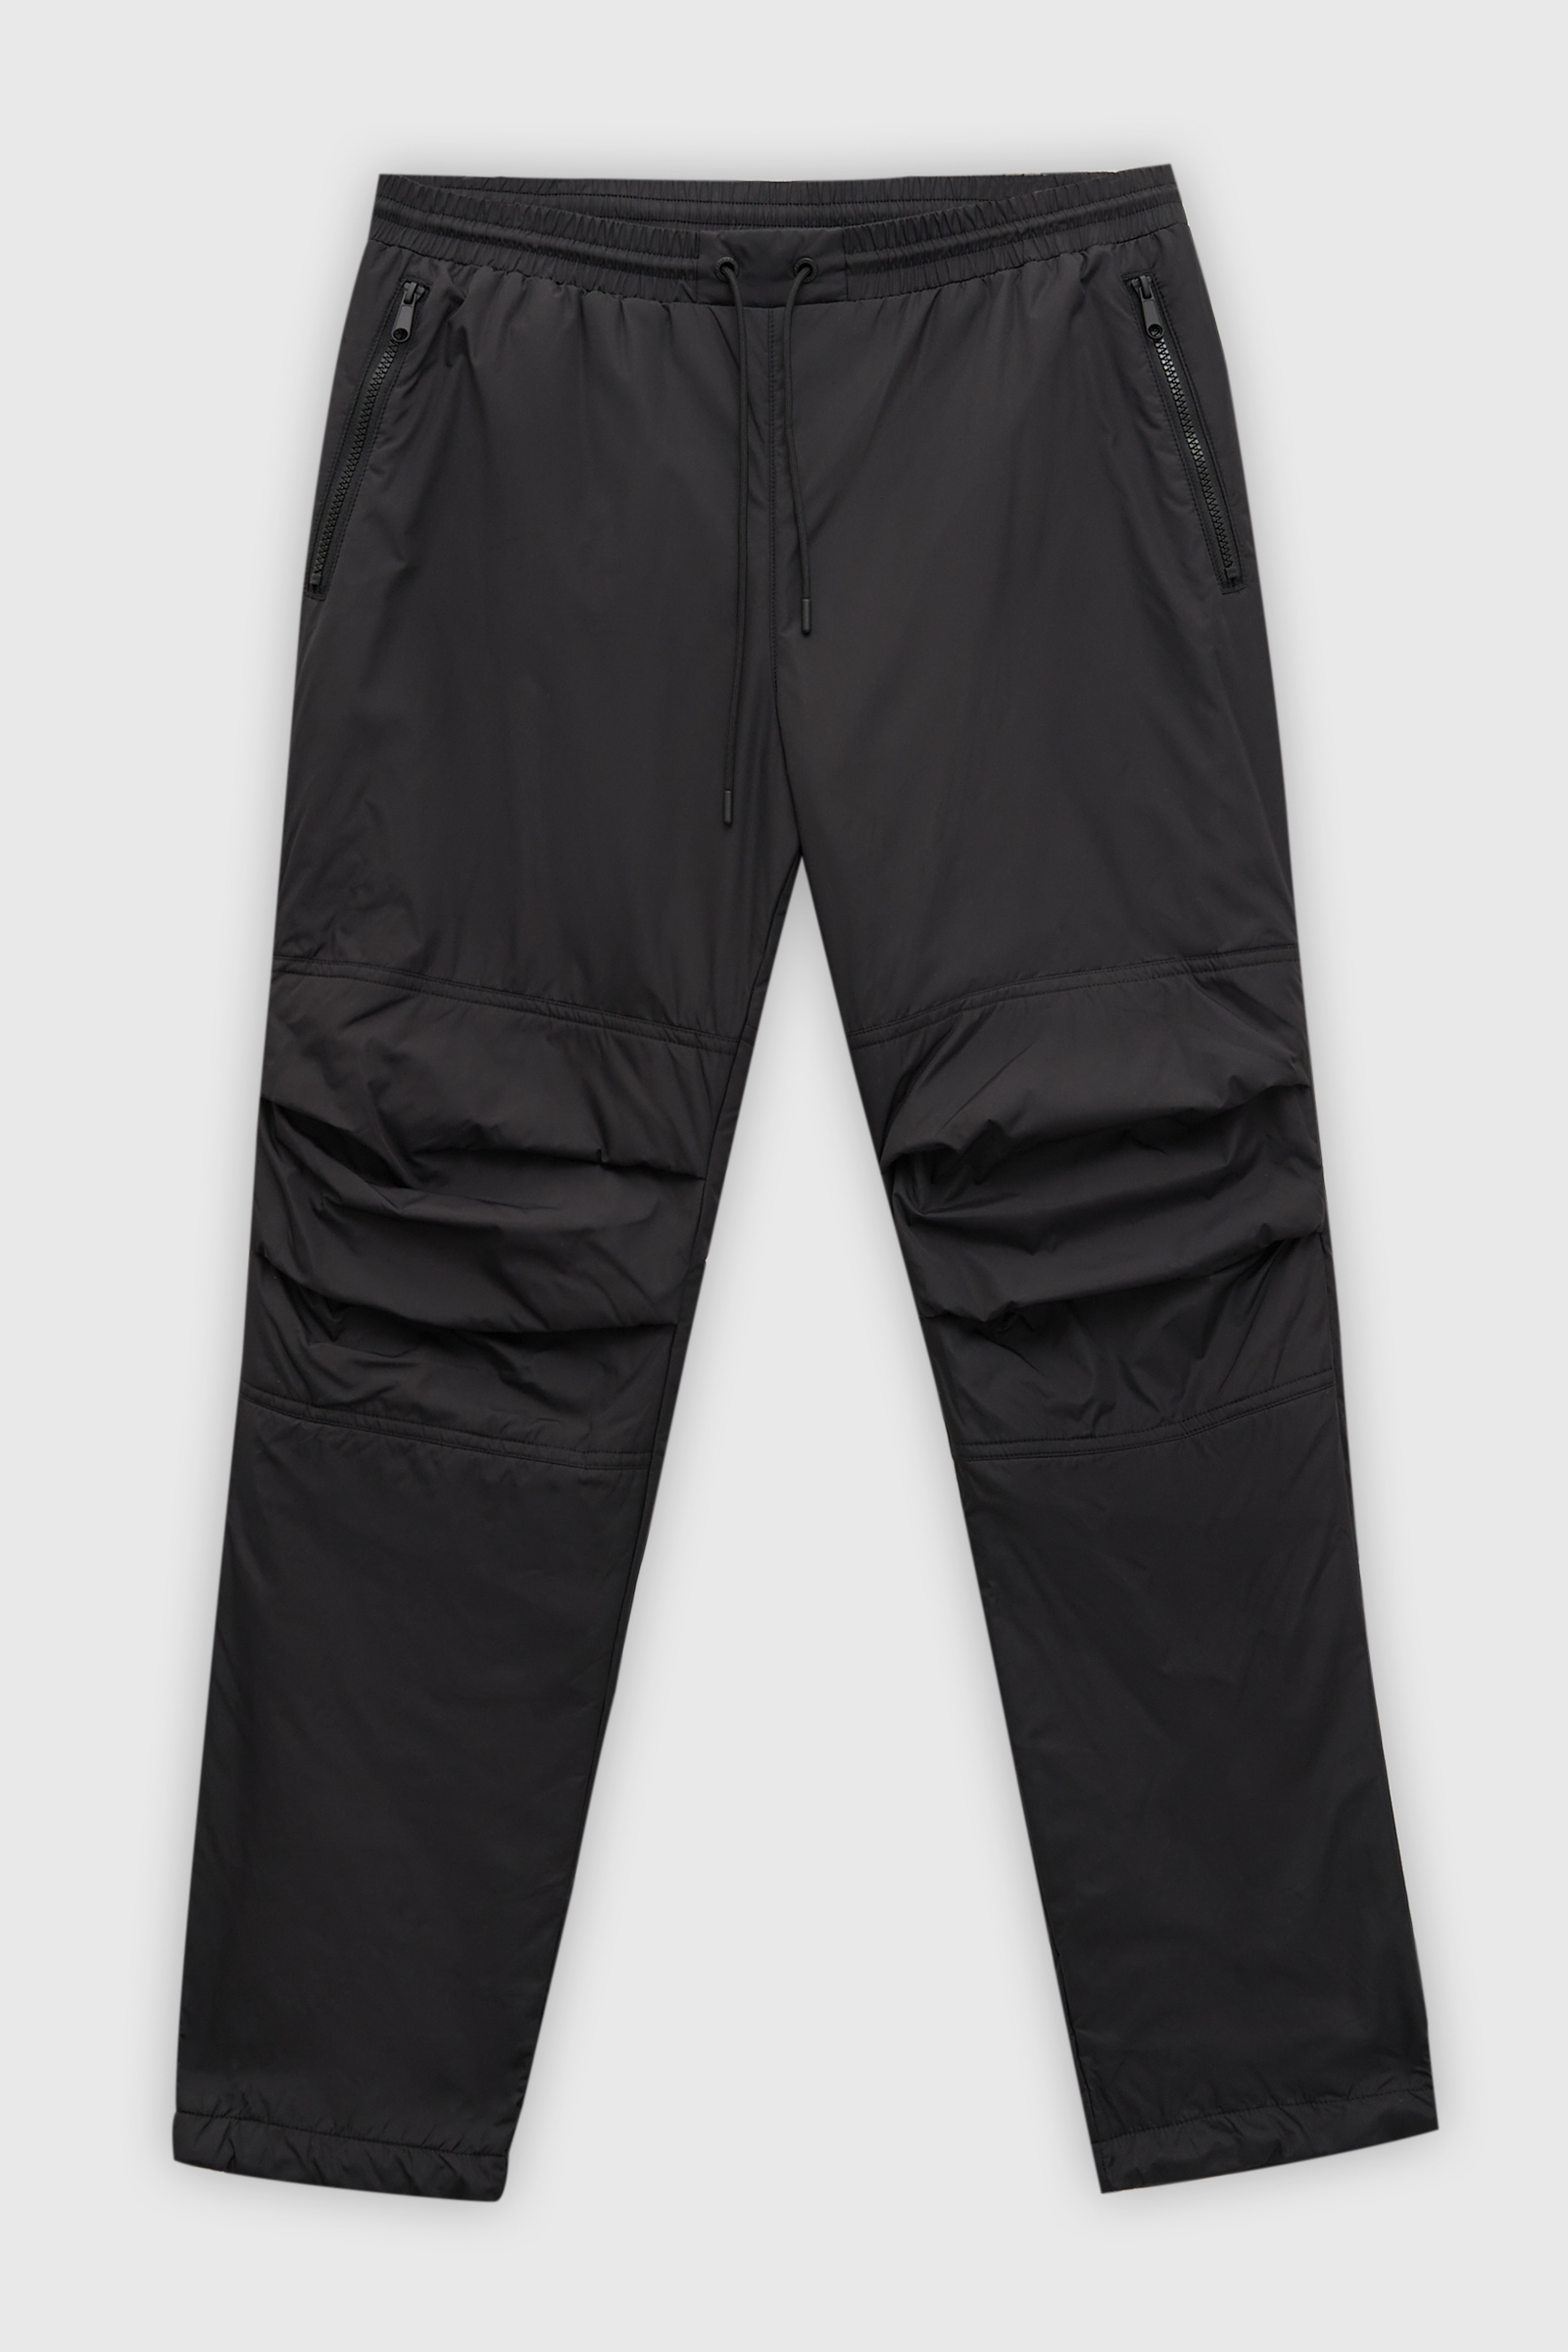 Спортивные брюки мужские Finn Flare FAD210101 черные XL